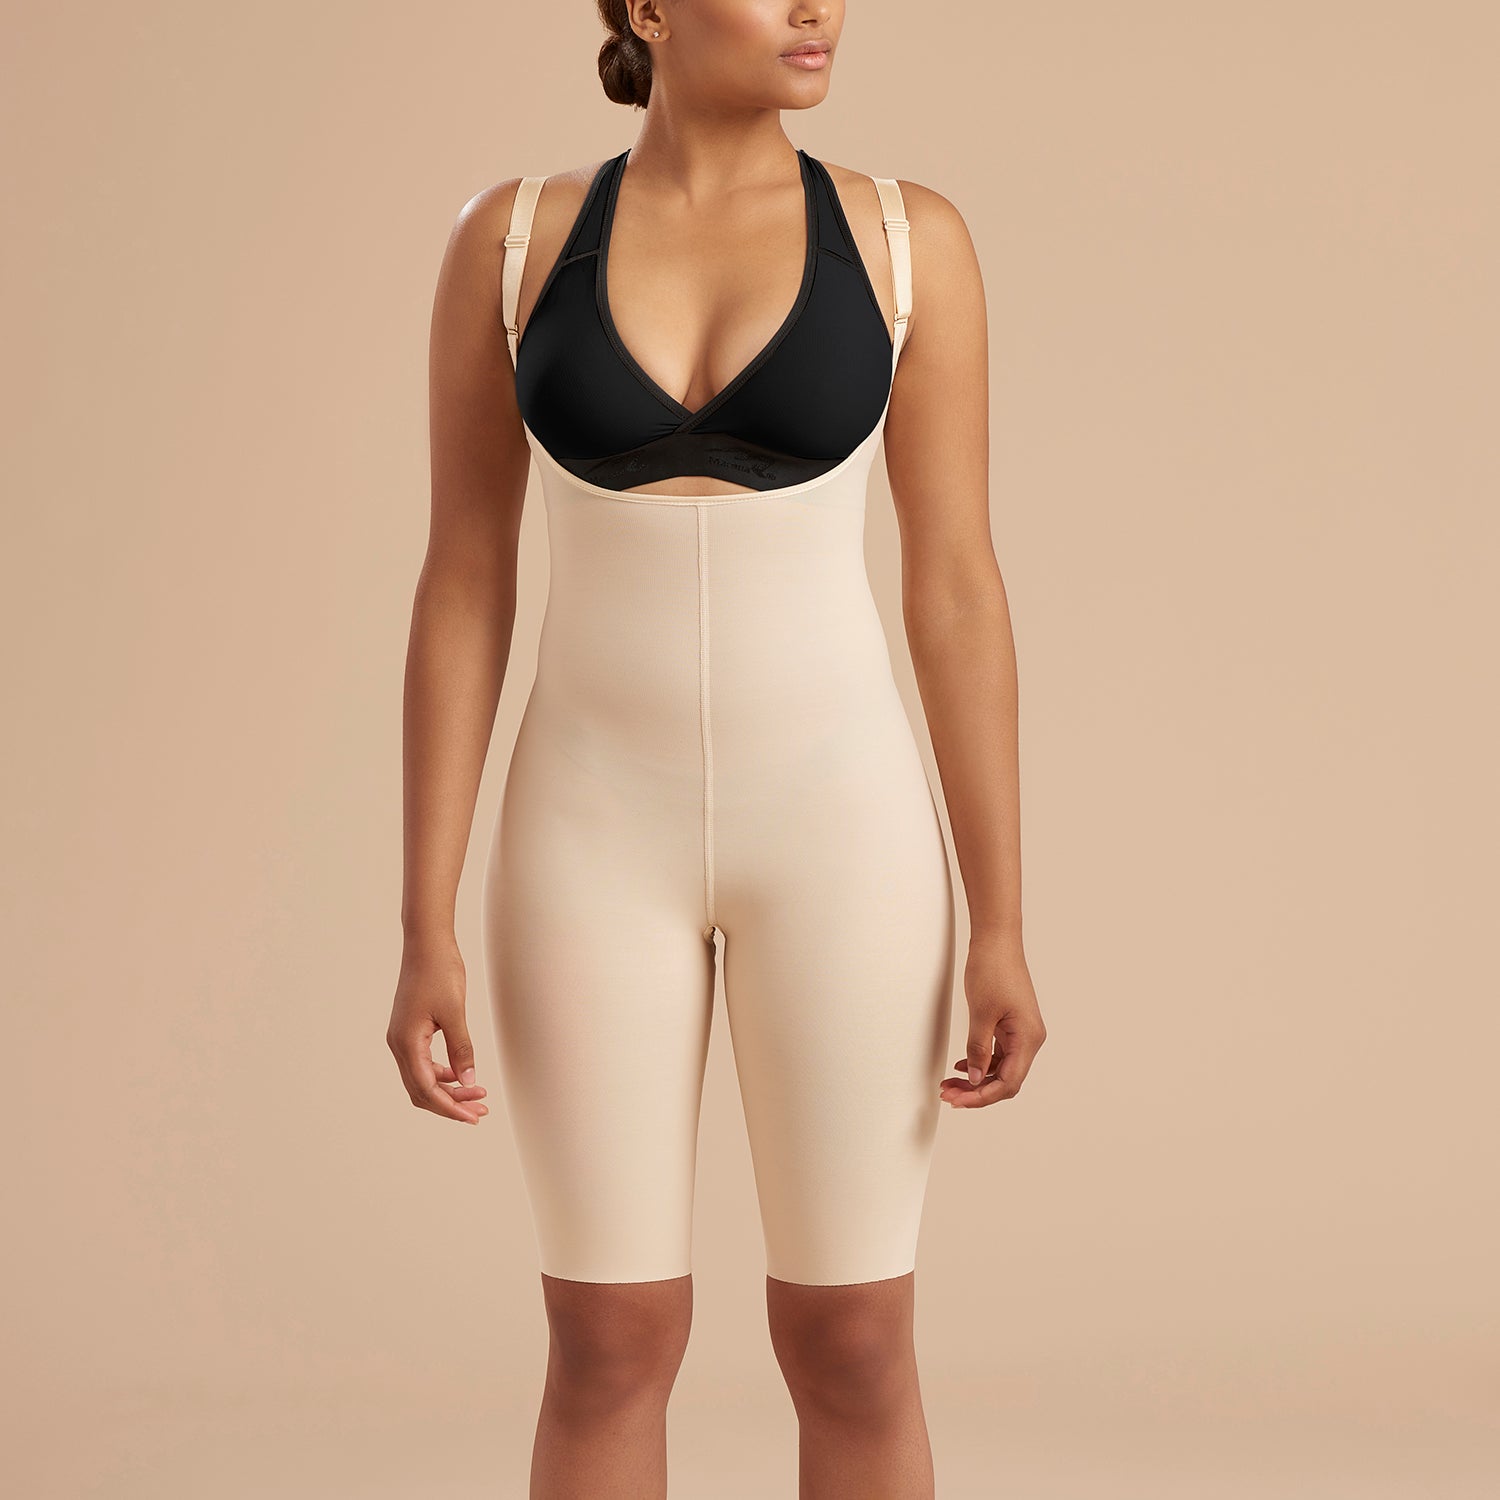 Fashion Women's High Compression GarmentWaist Trainer Tummy